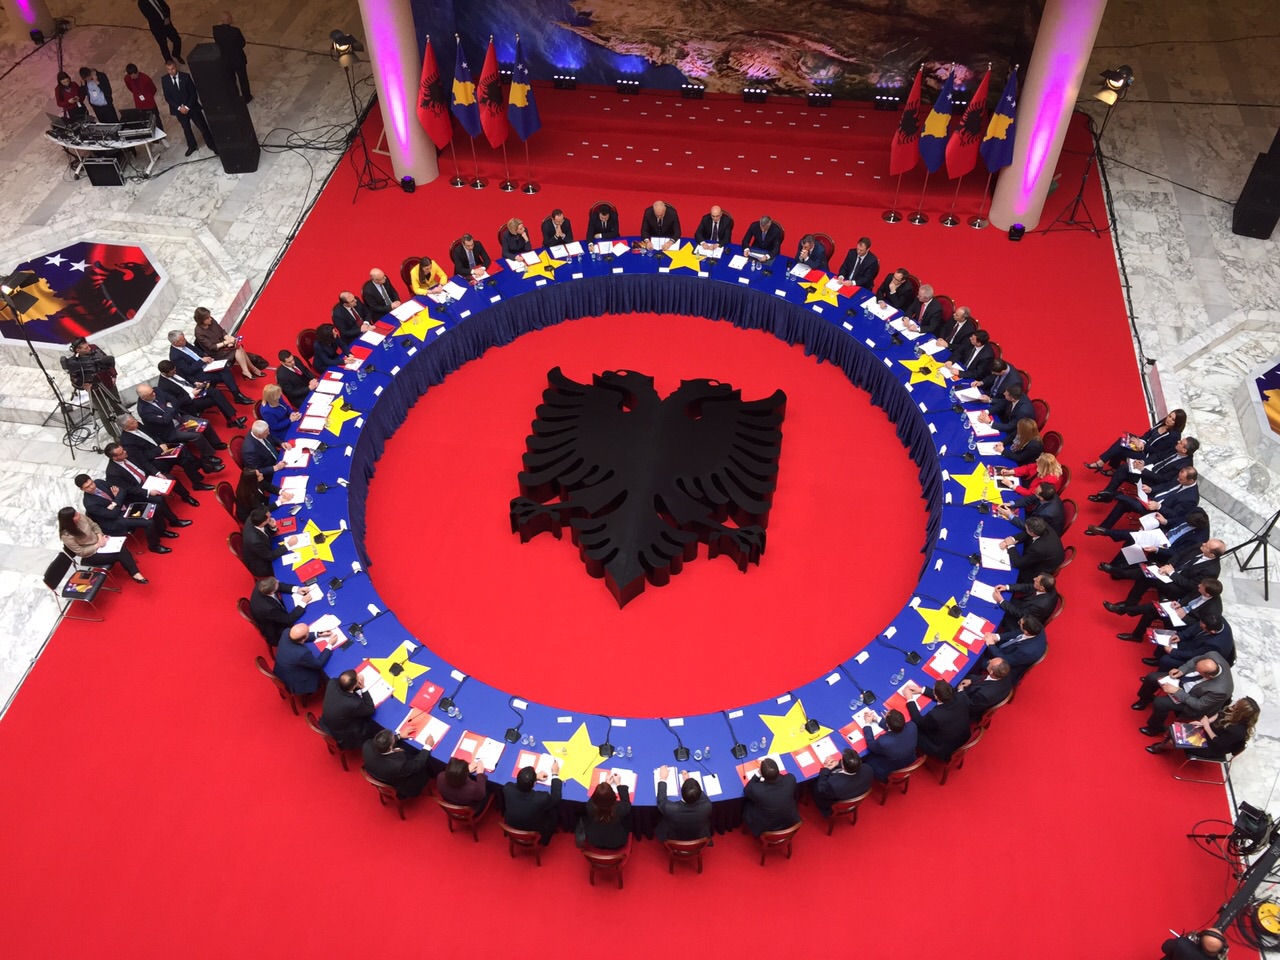 Çfarë pritet të ndodhë në mbledhjen mes qeverive të Shqipërisë e Kosovës?